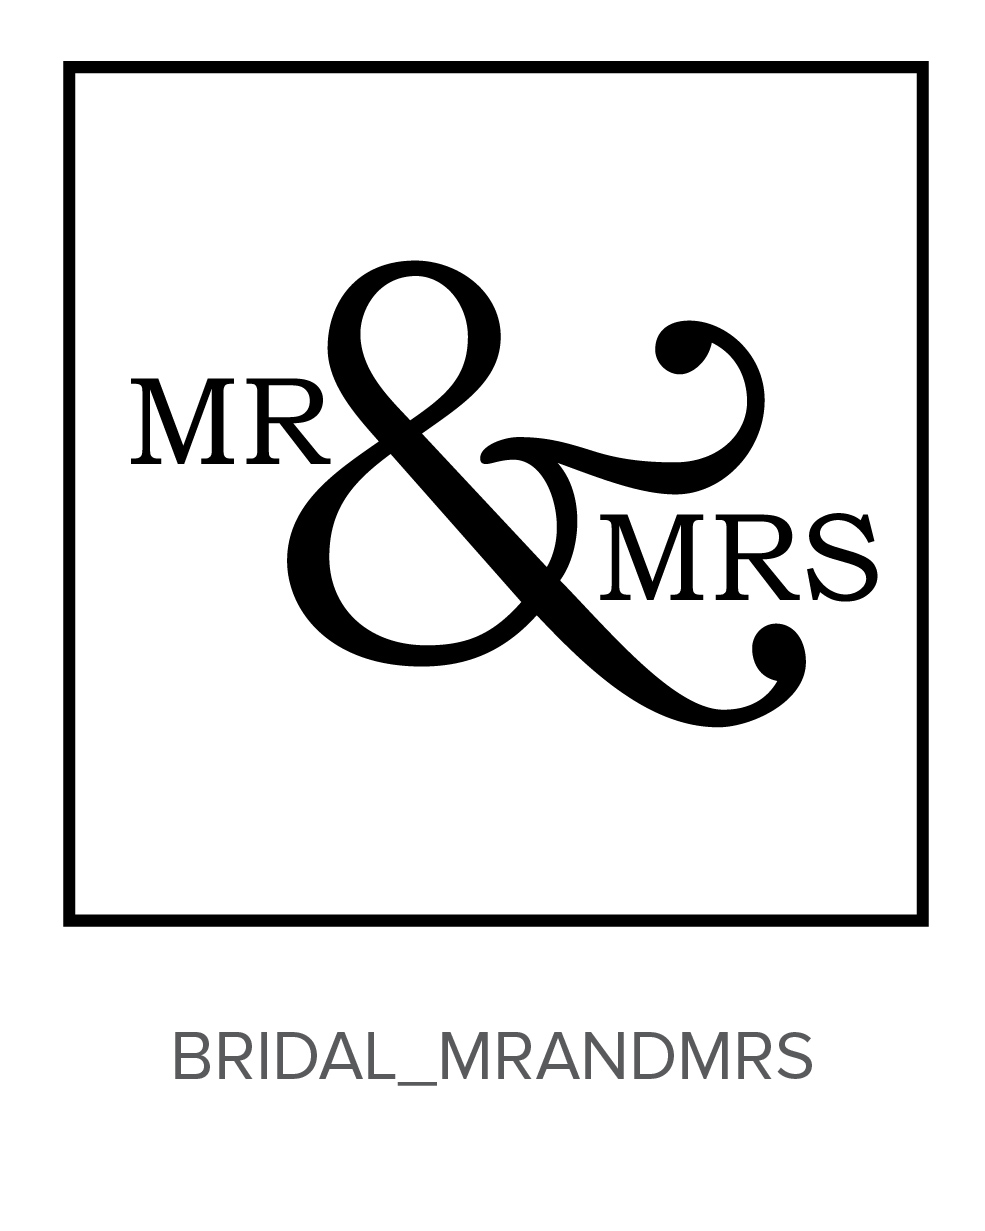 Mr ms mrs. Надпись Мистер и миссис. Mr MS надпись. Mrs логотип. Мистер и миссис рисунок.